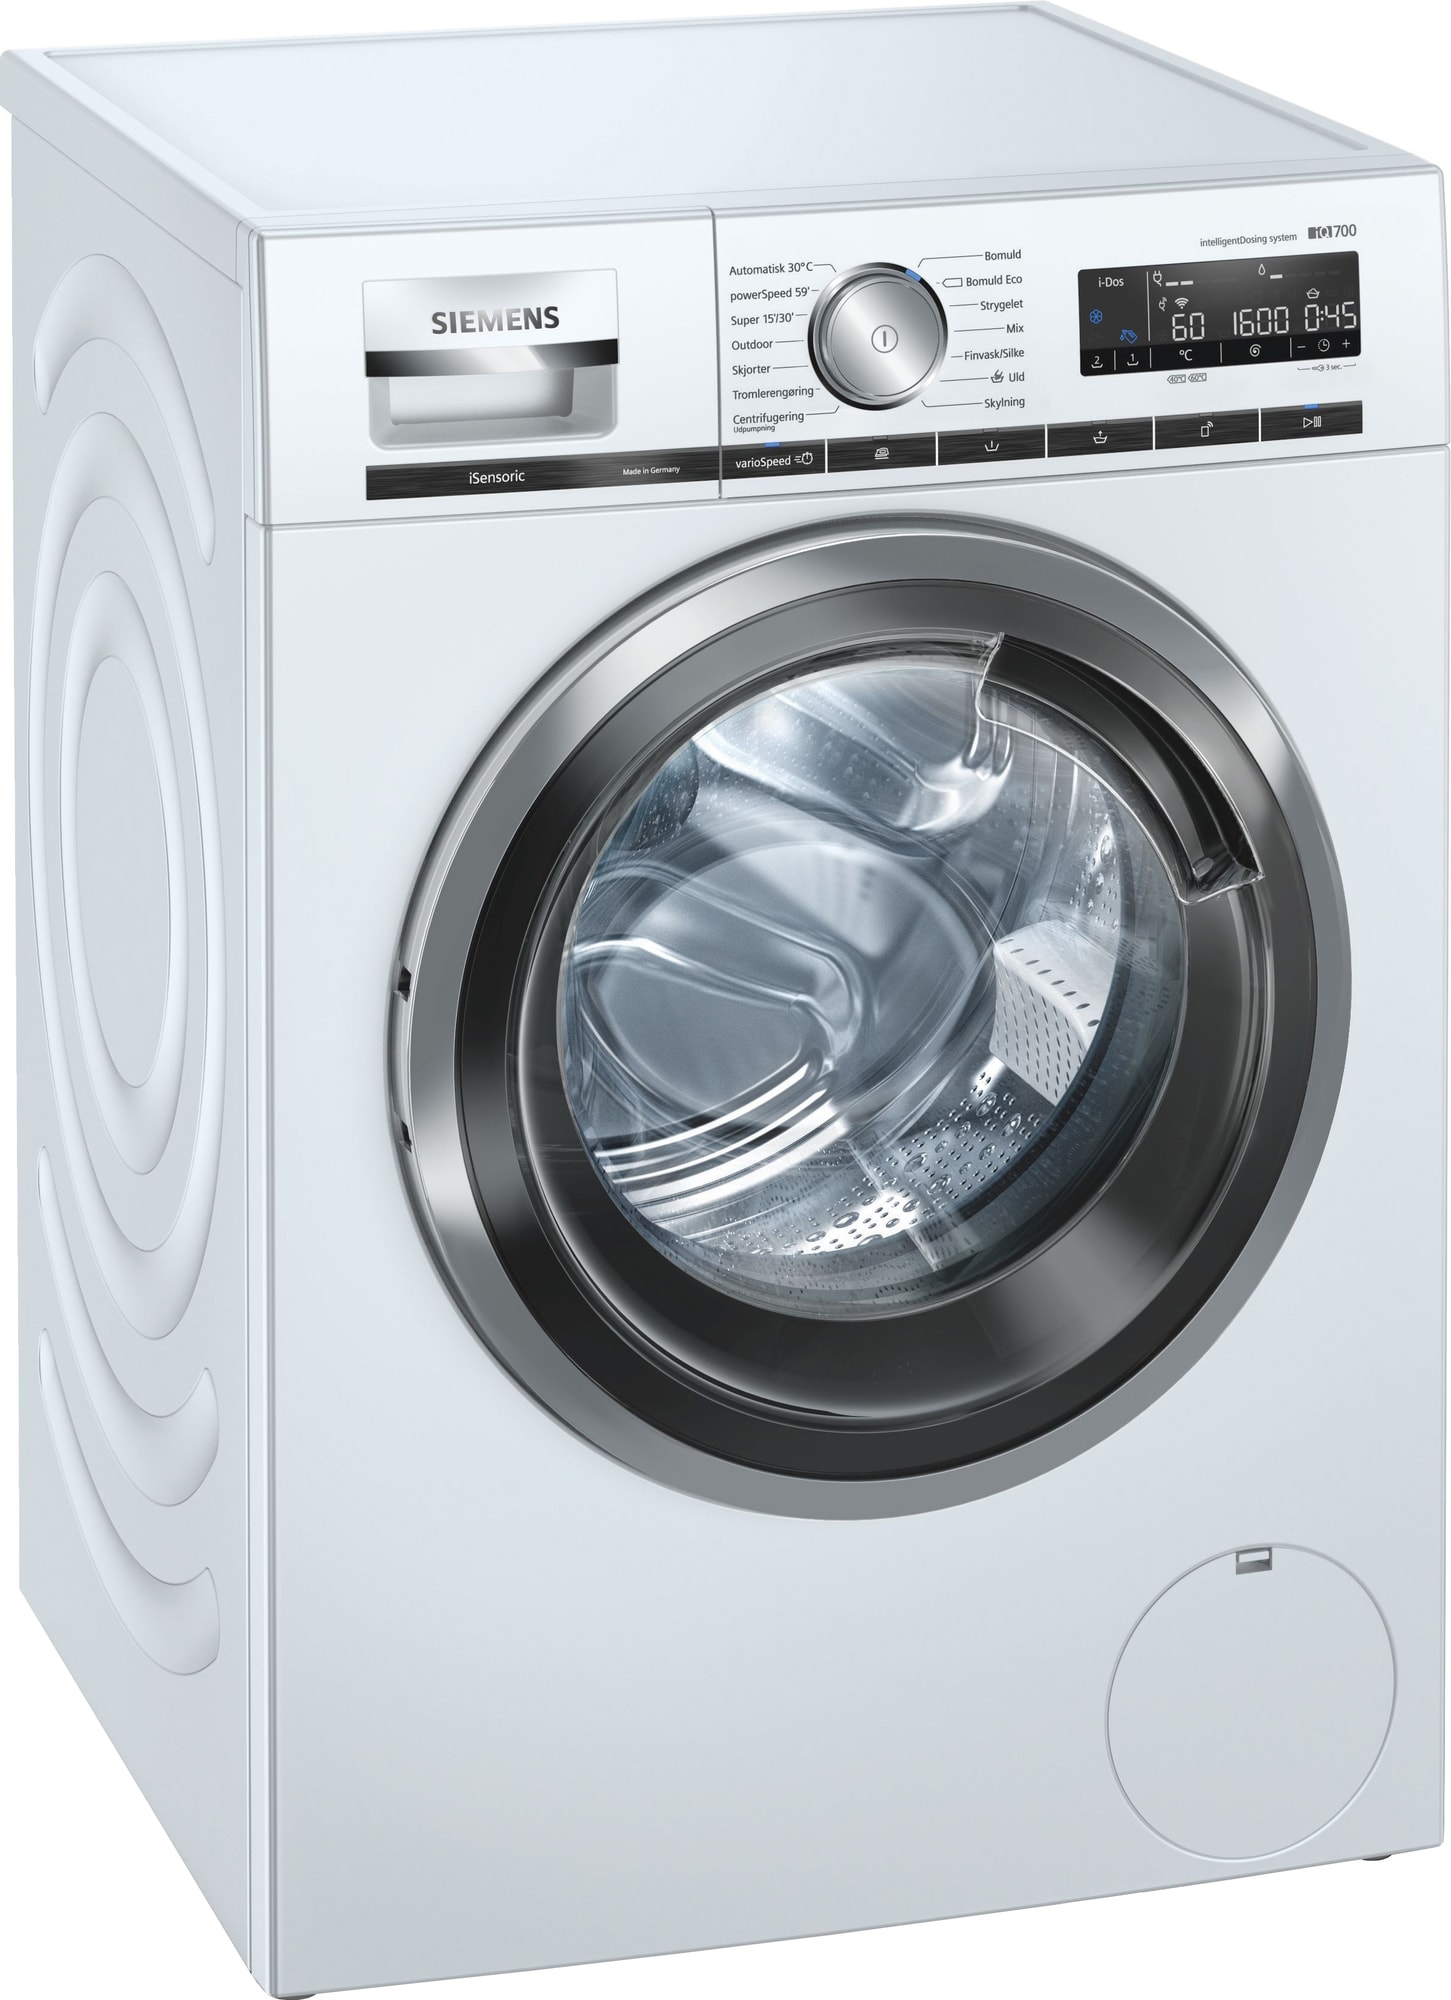 Siemens vaskemaskin elkjøp